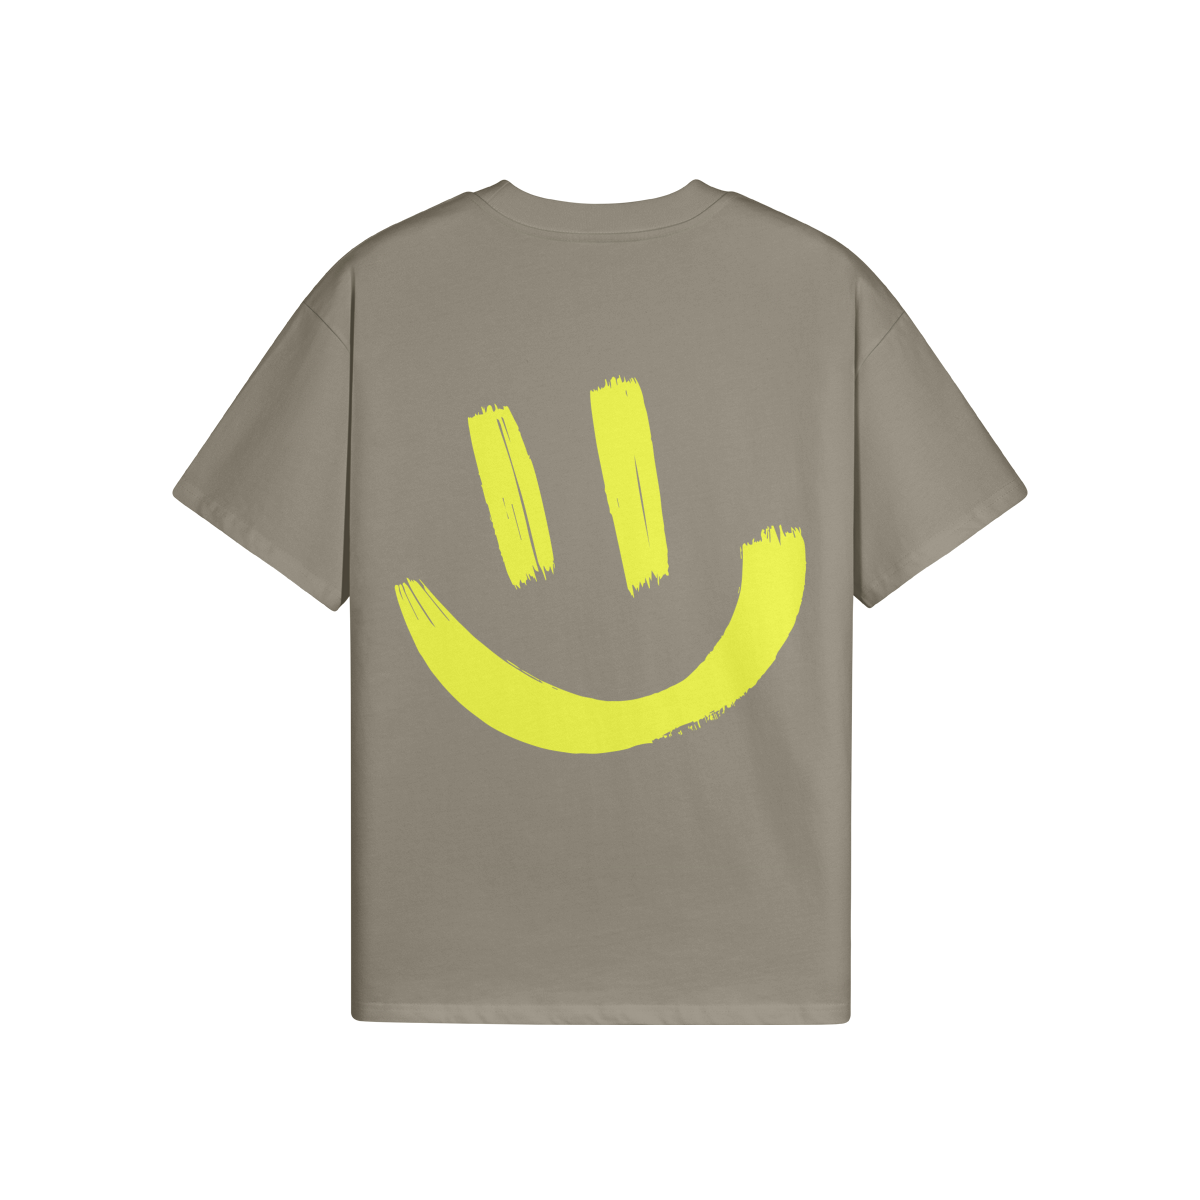 $MILE (BACK PRINT) - Unisex Oversized T-shirt